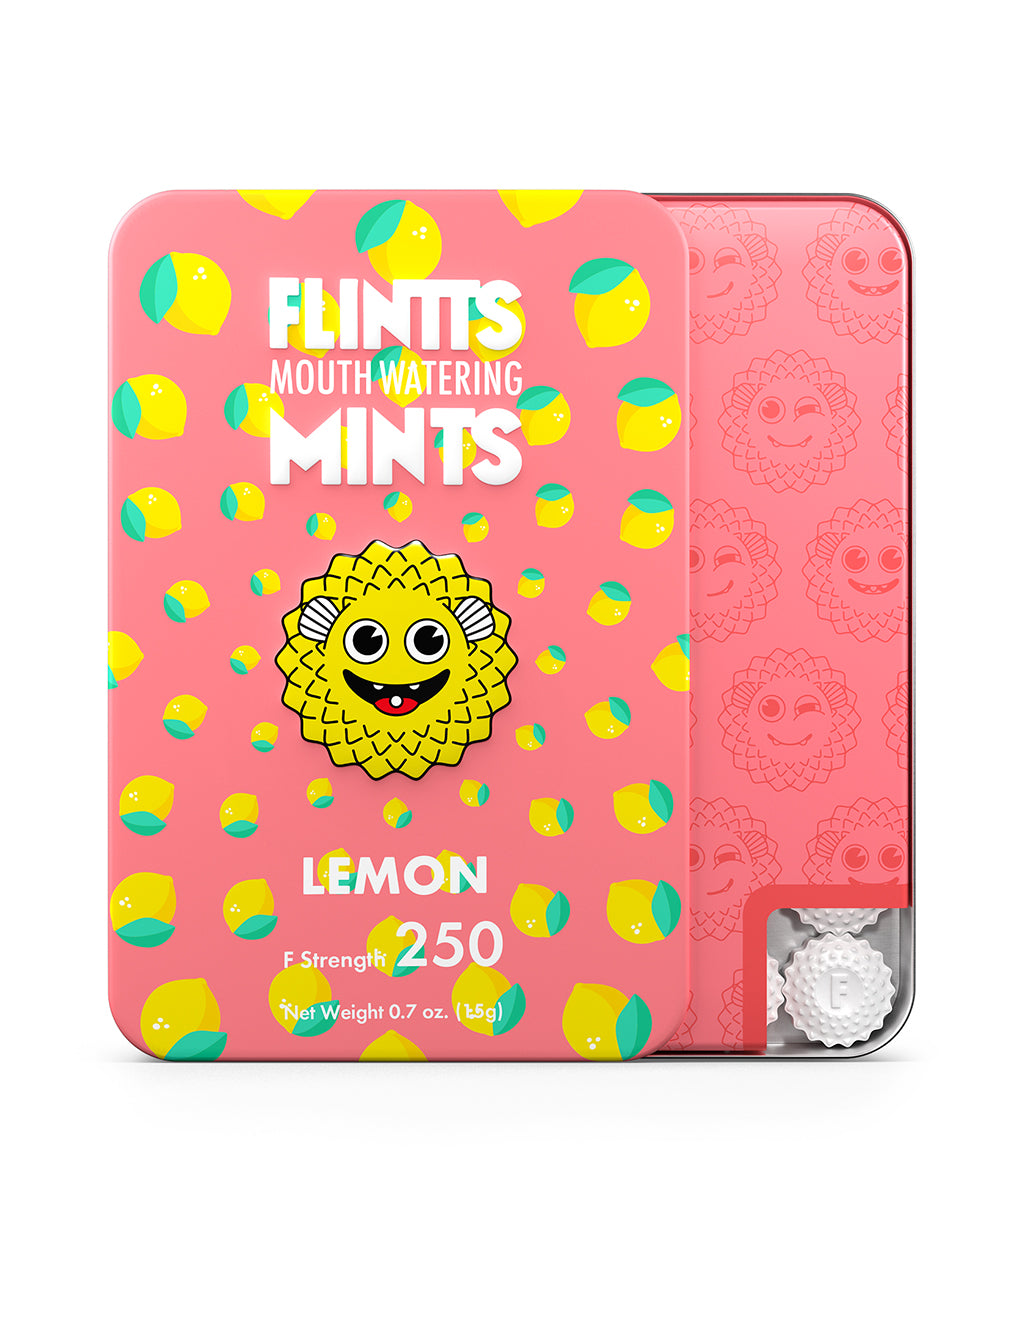 Flintts Mouth Watering Mints Lemon F250